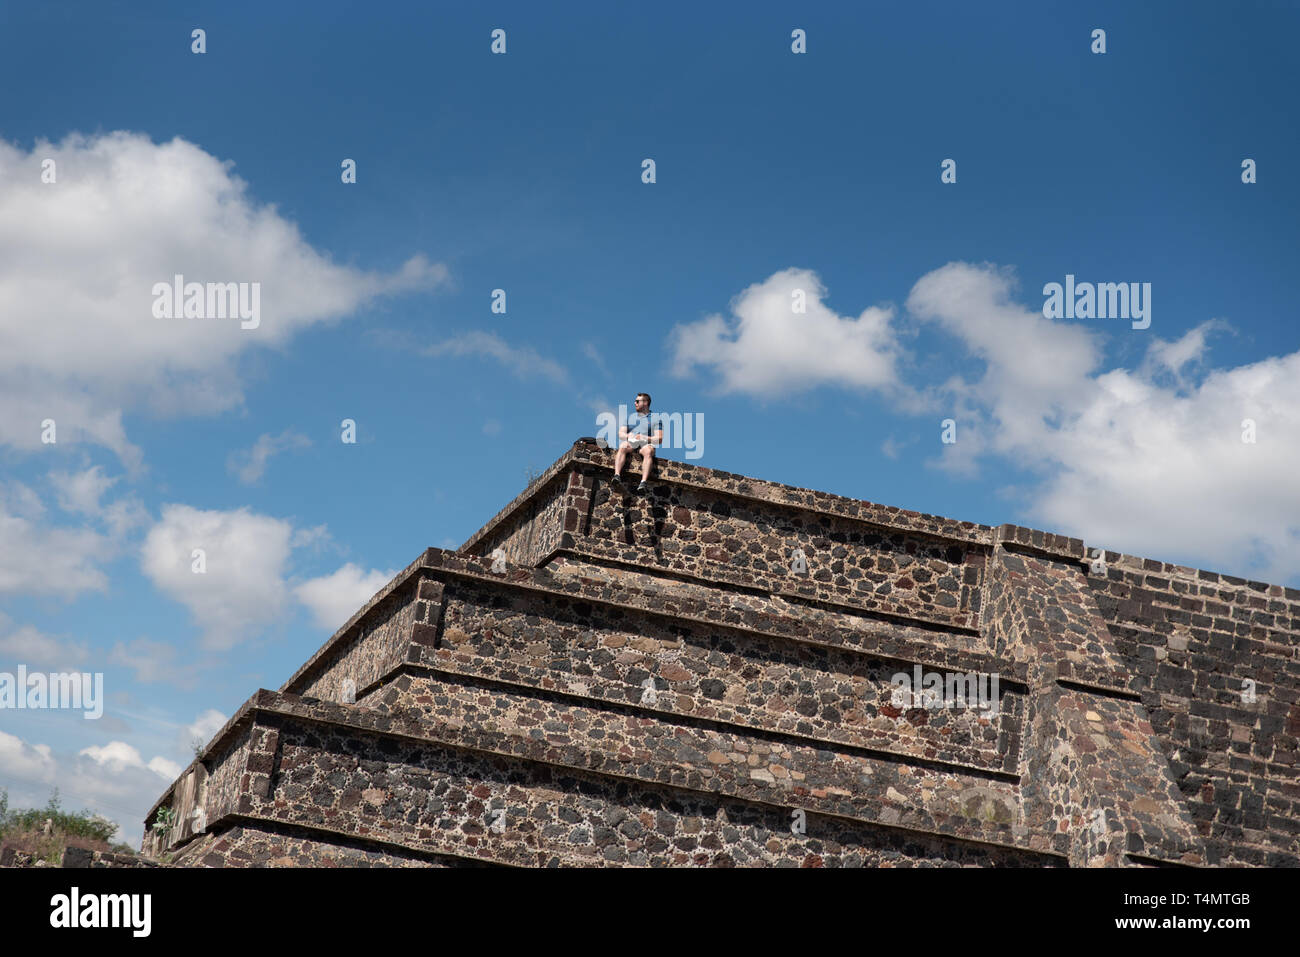 Ein einsamer Tourist sitzt an der Spitze der kleine Pyramiden von Teotihuacan, einer Mesoamerikanischen UNESCO-Weltkulturerbe seit 1987. Stockfoto